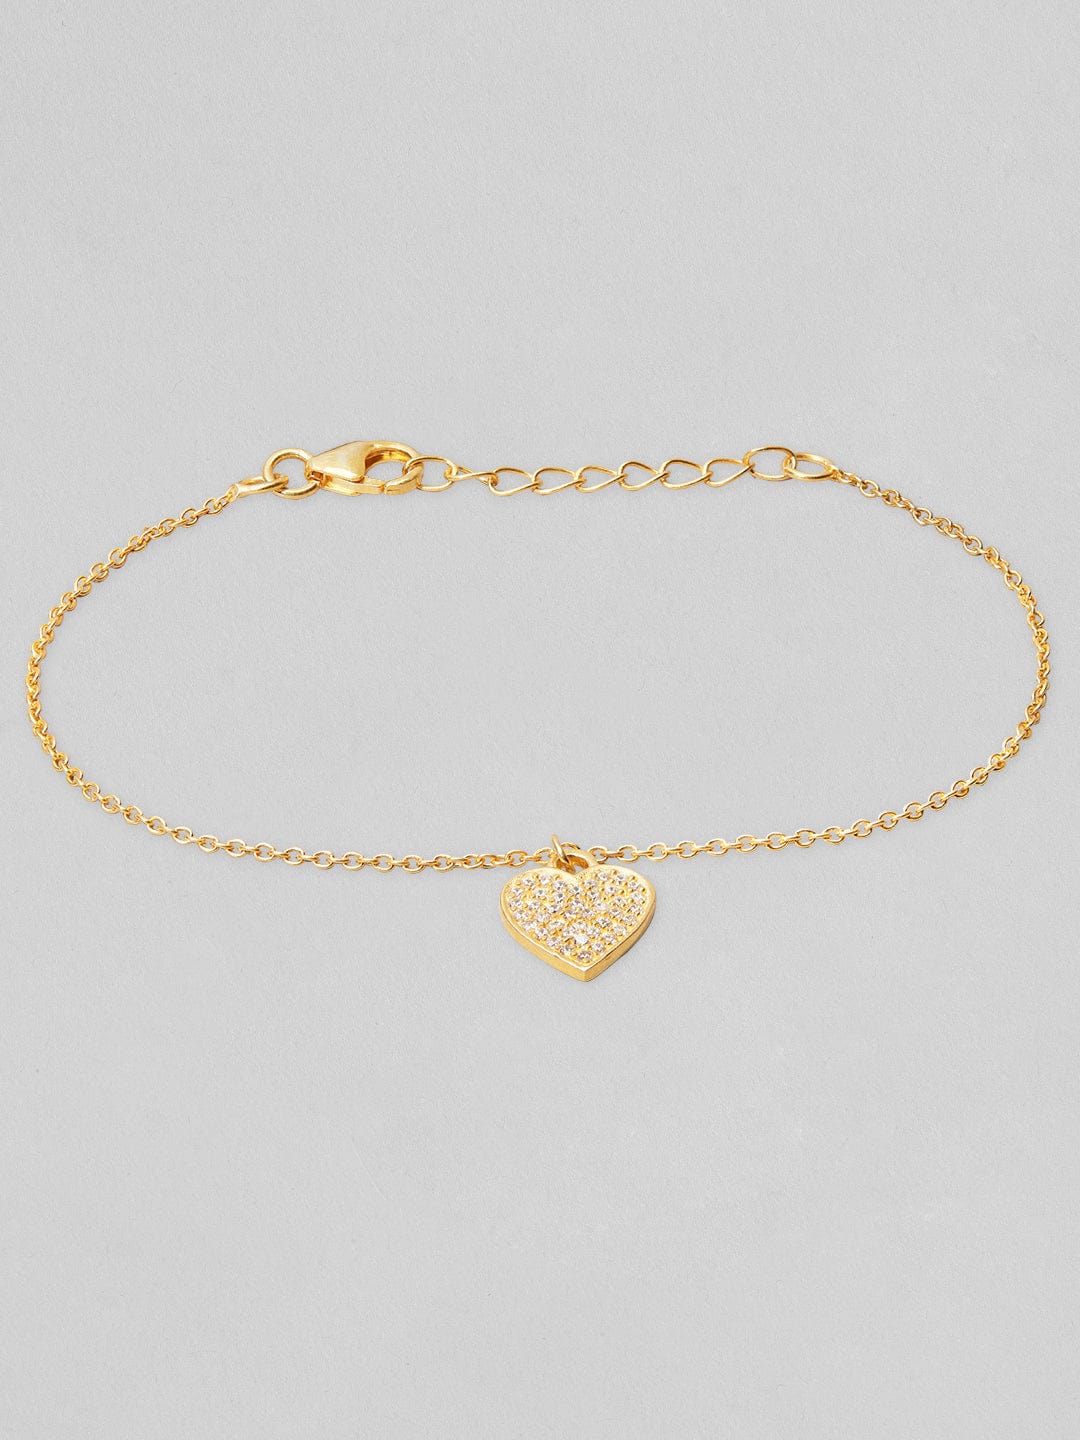 Romantic Two Heart Bracelet 9K 14K 18K Yellow Gold Bracelet  Etsy  Gold  bracelet etsy Jewelry bracelets gold Diamond bracelet design